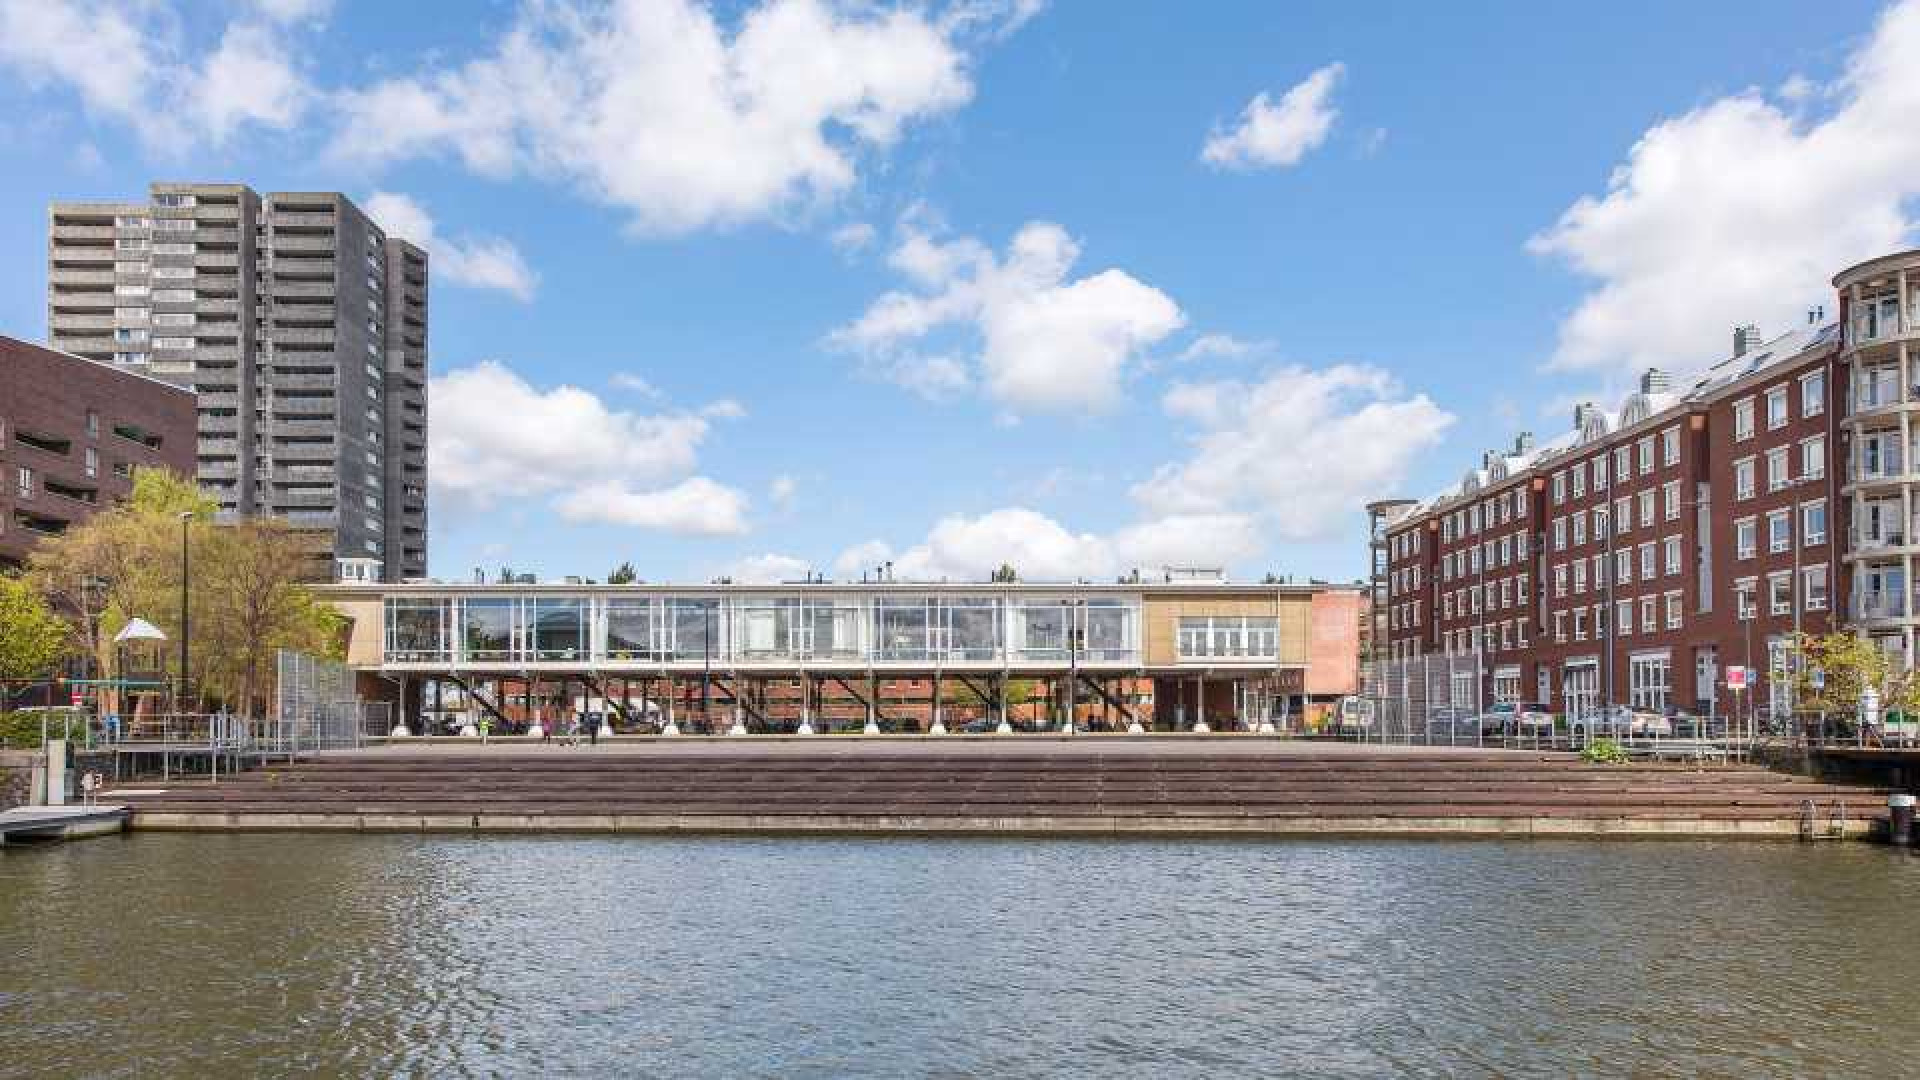 Deze bekende nederlander heeft al zeven jaar zijn Amsterdamse penthouse te koop staan. Zie foto's penthouse